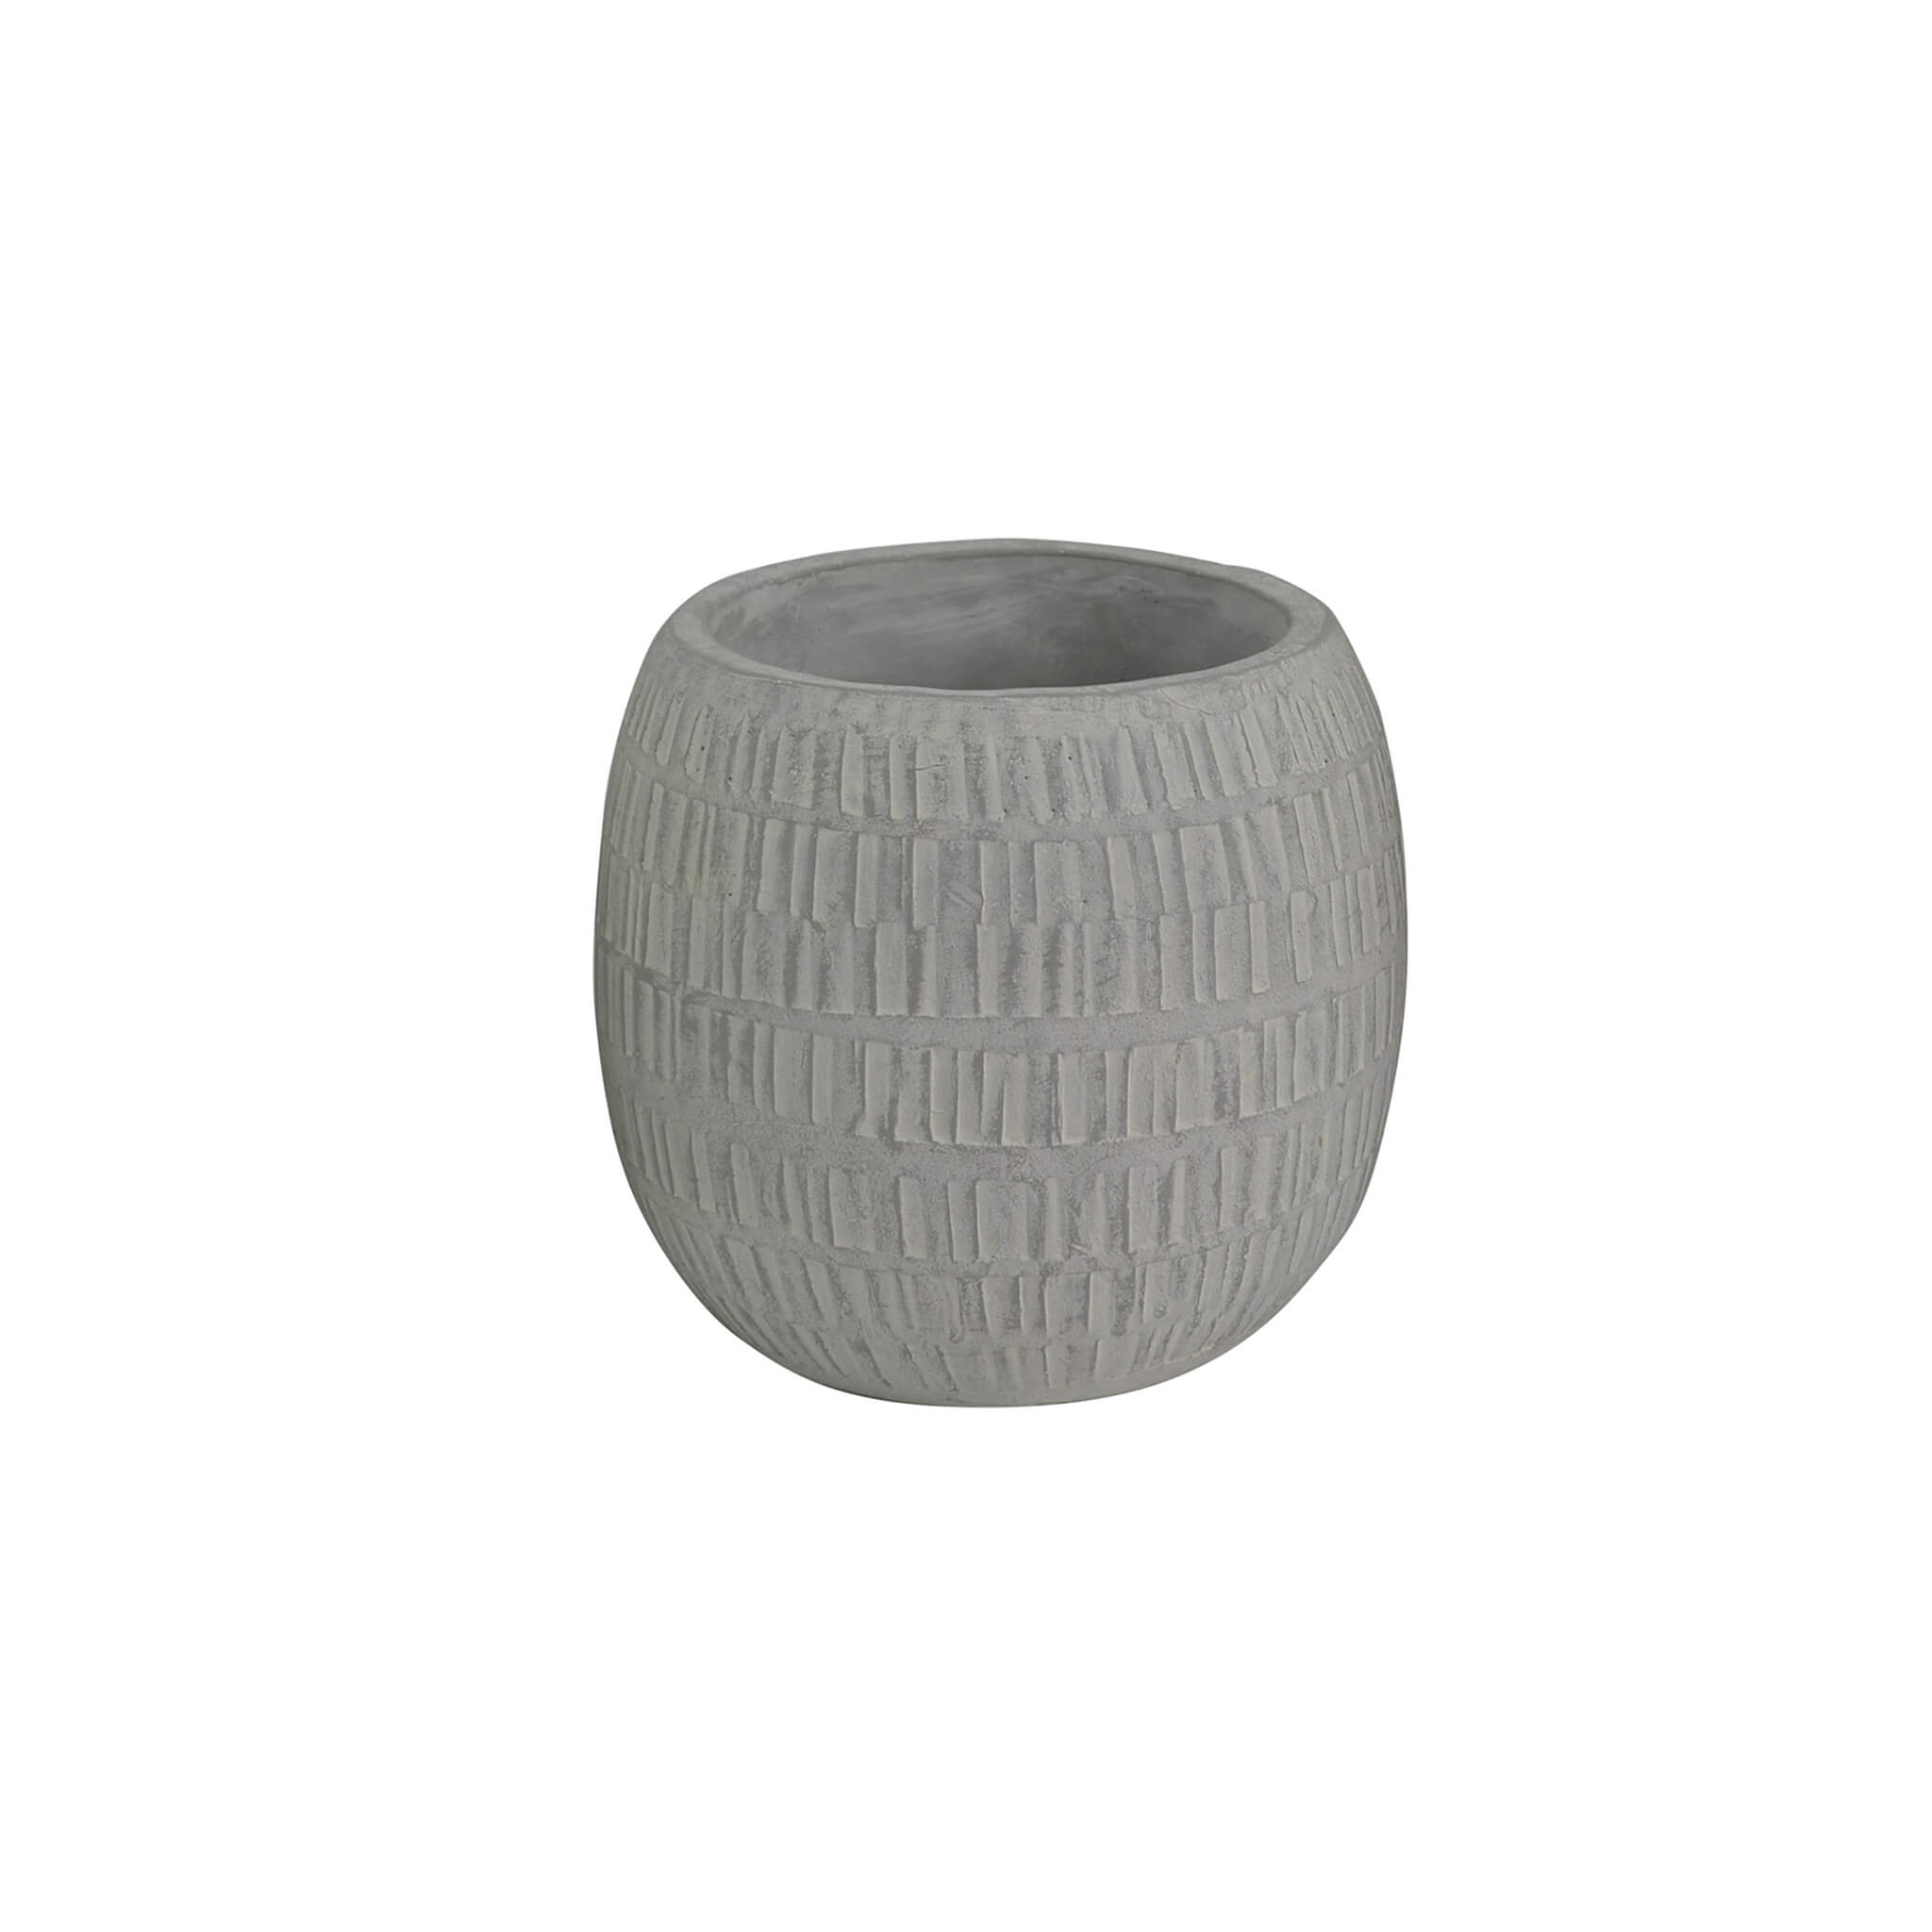 Milani Home vaso in fibra sintetica di design moderno industrial cm 16 x 16 x 14,5 h Grigio 16 x 15 x 16 cm